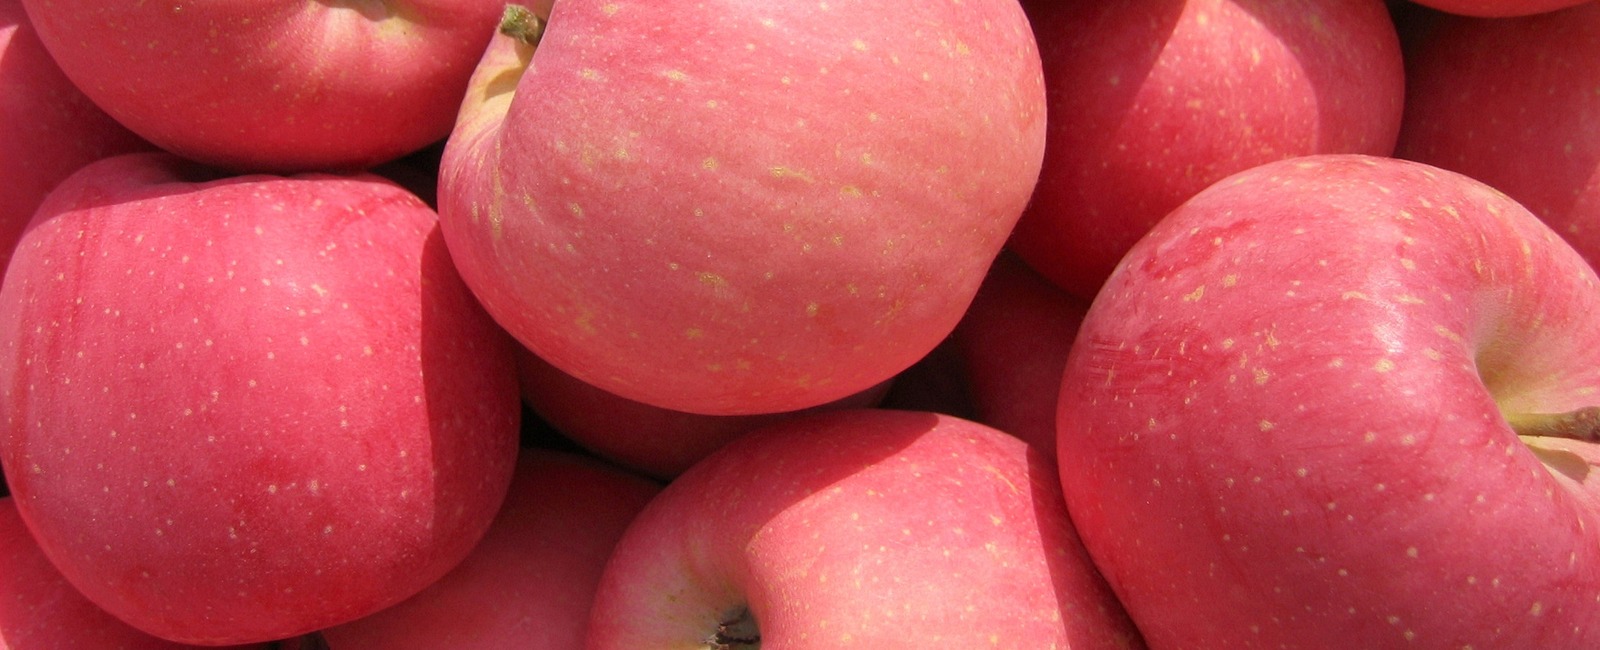 Rôle du manganèse dans la culture des pommes